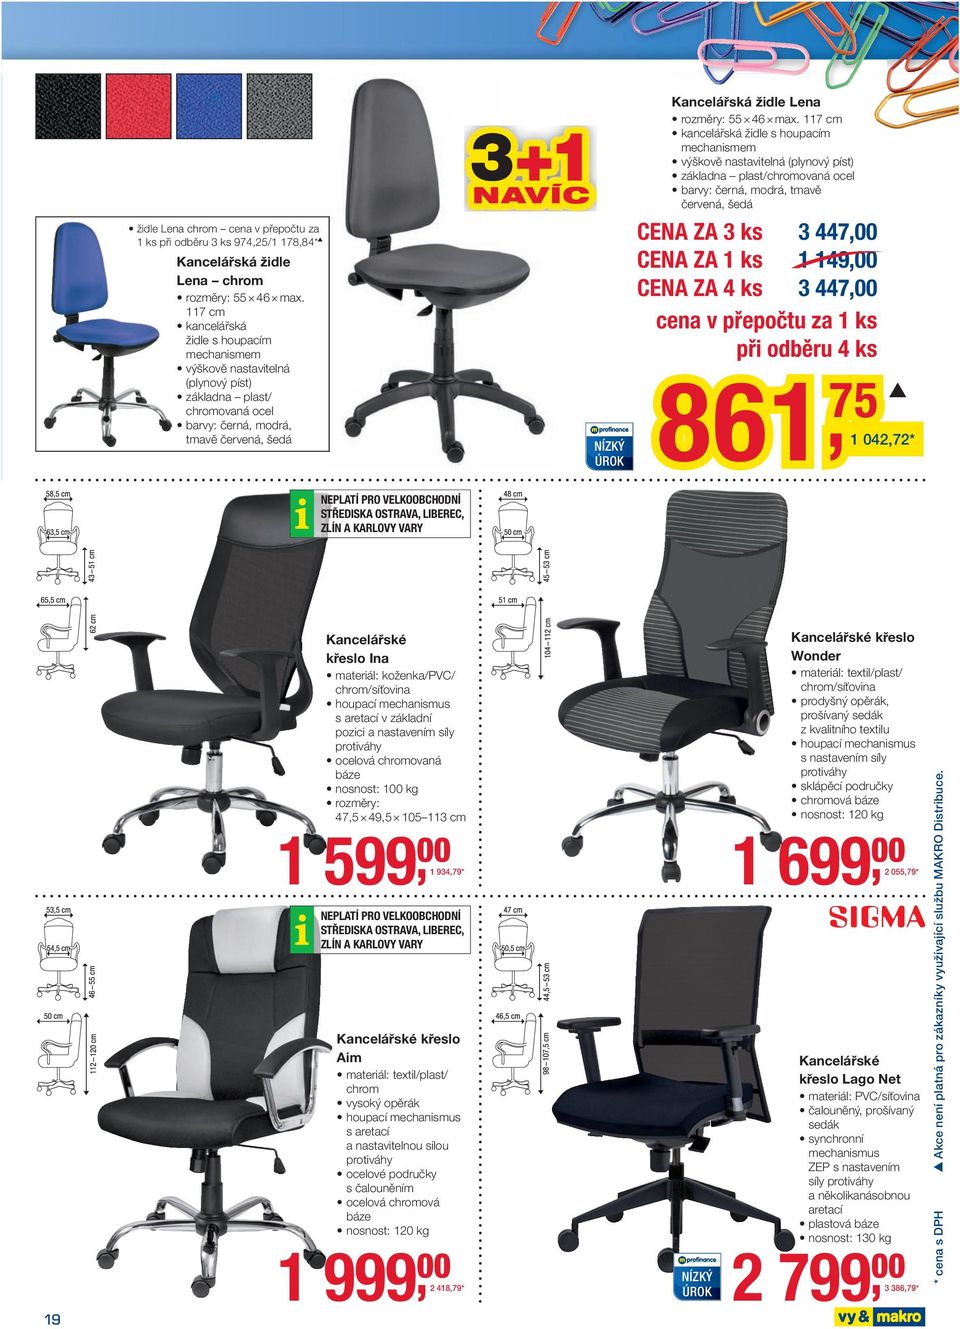 max. 117 cm kancelářská židle s houpacím mechanismem výškově nastavitelná (plynový píst) základna plast/chromovaná ocel barvy: černá, mrá, tmavě červená, šedá CENA ZA 3 ks 3 447,00 CENA ZA 1 ks 1